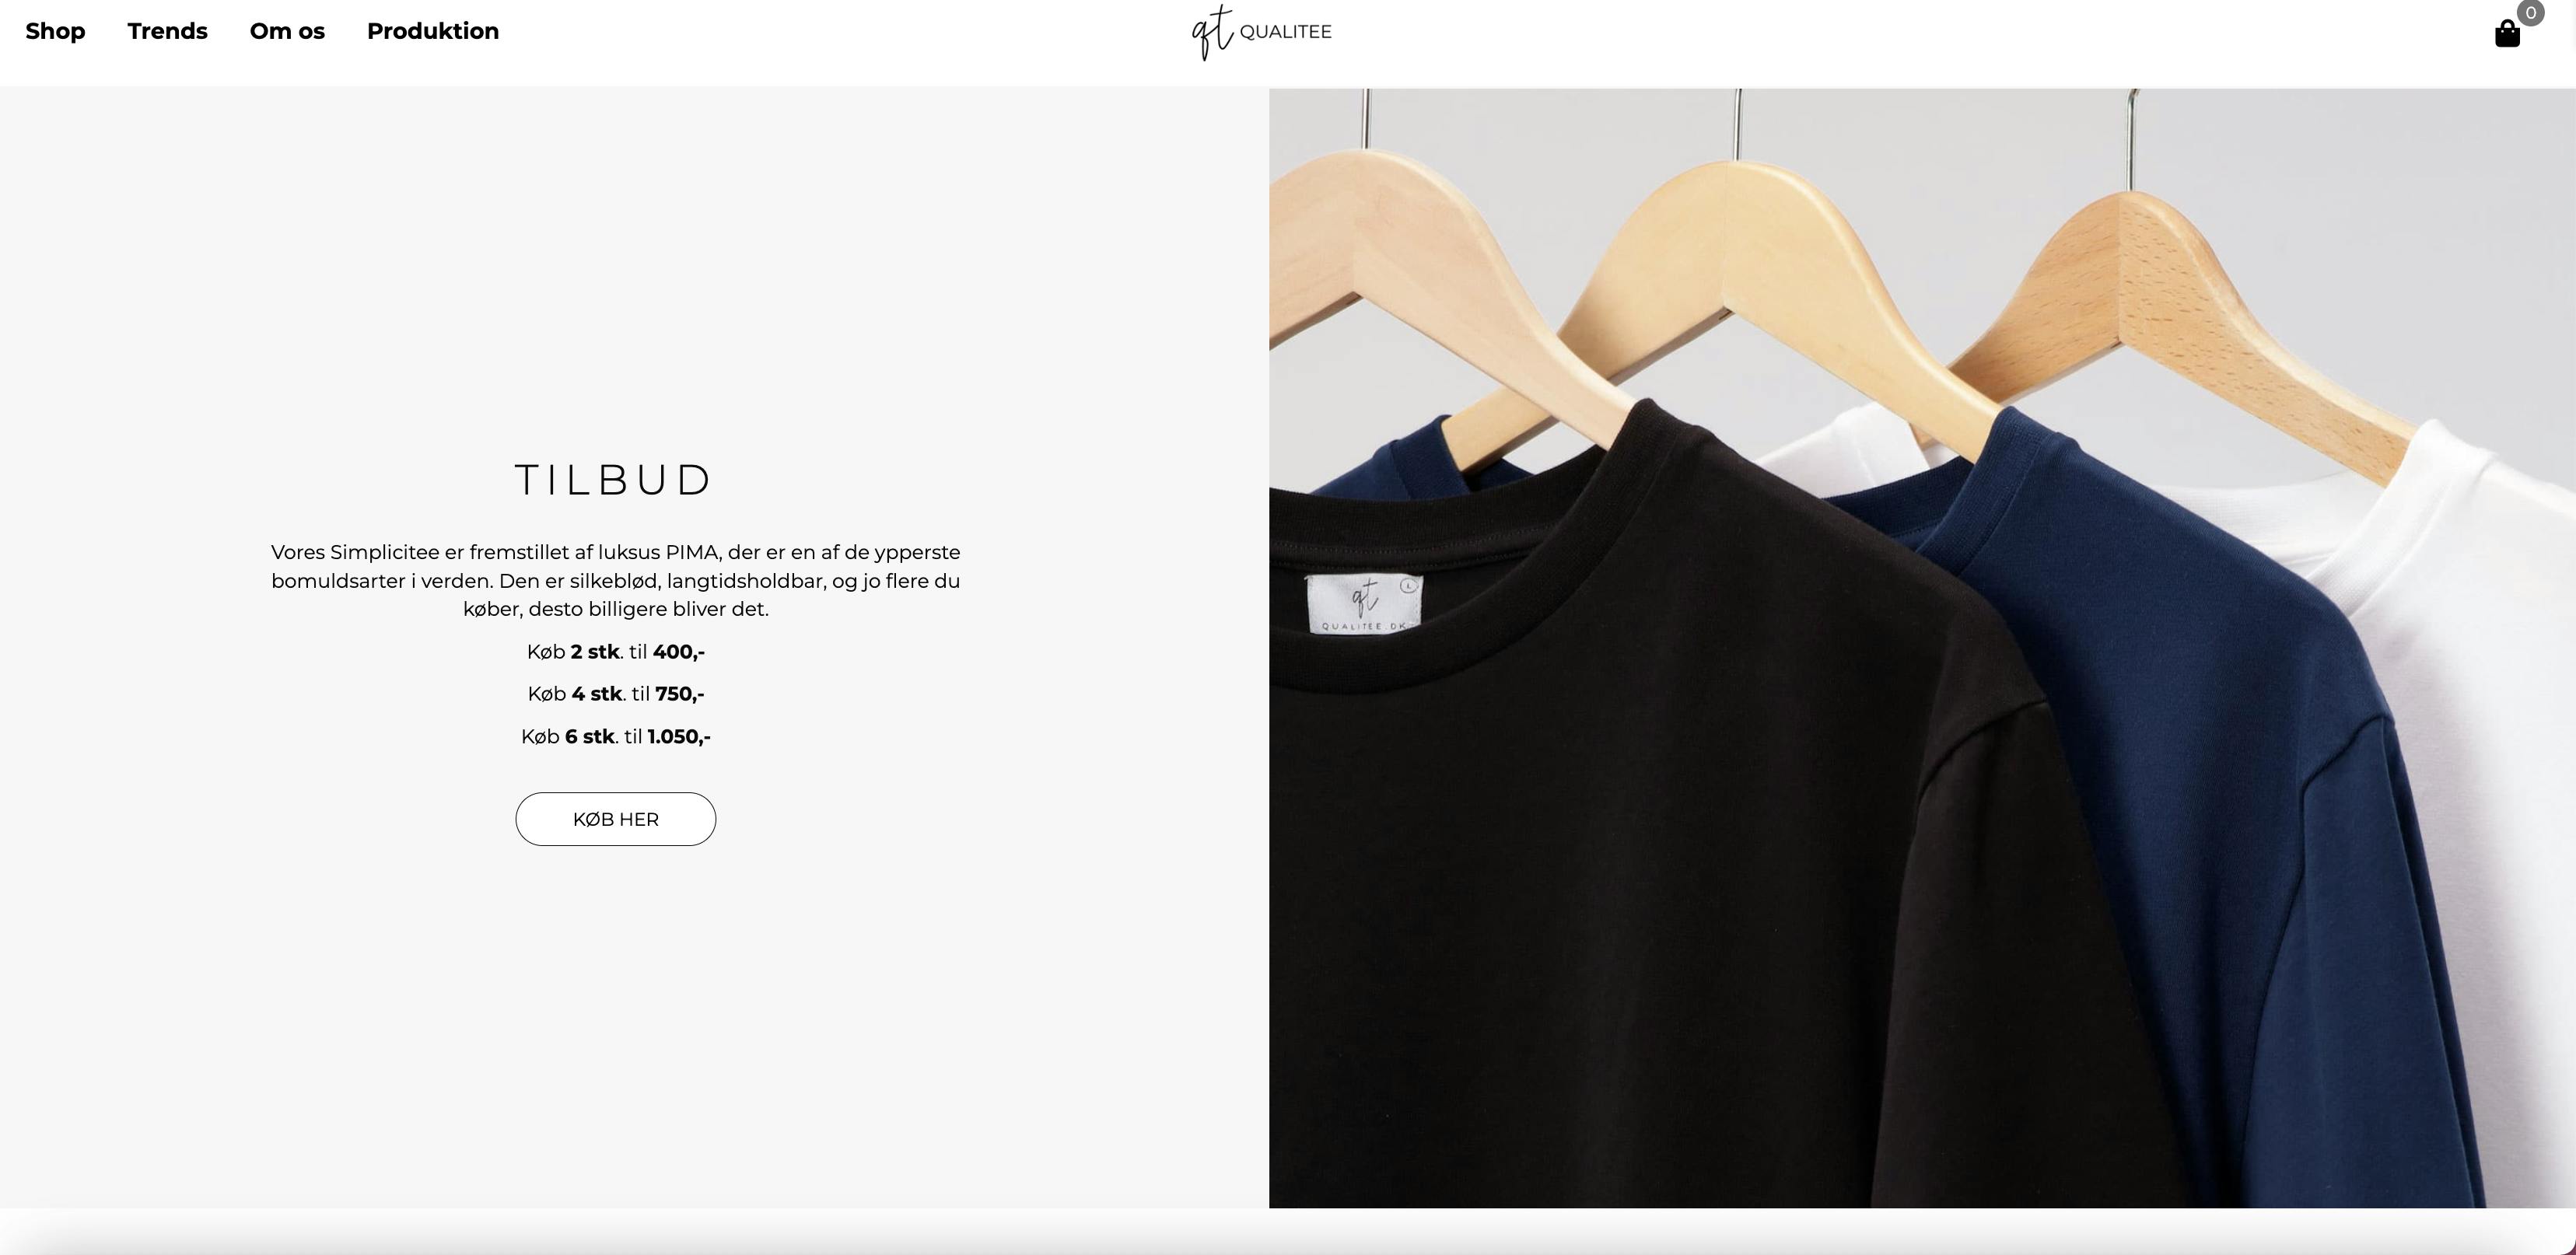 Fuld funktionel webshop til - Online salg af kvalitets t-shirts - leverandør i